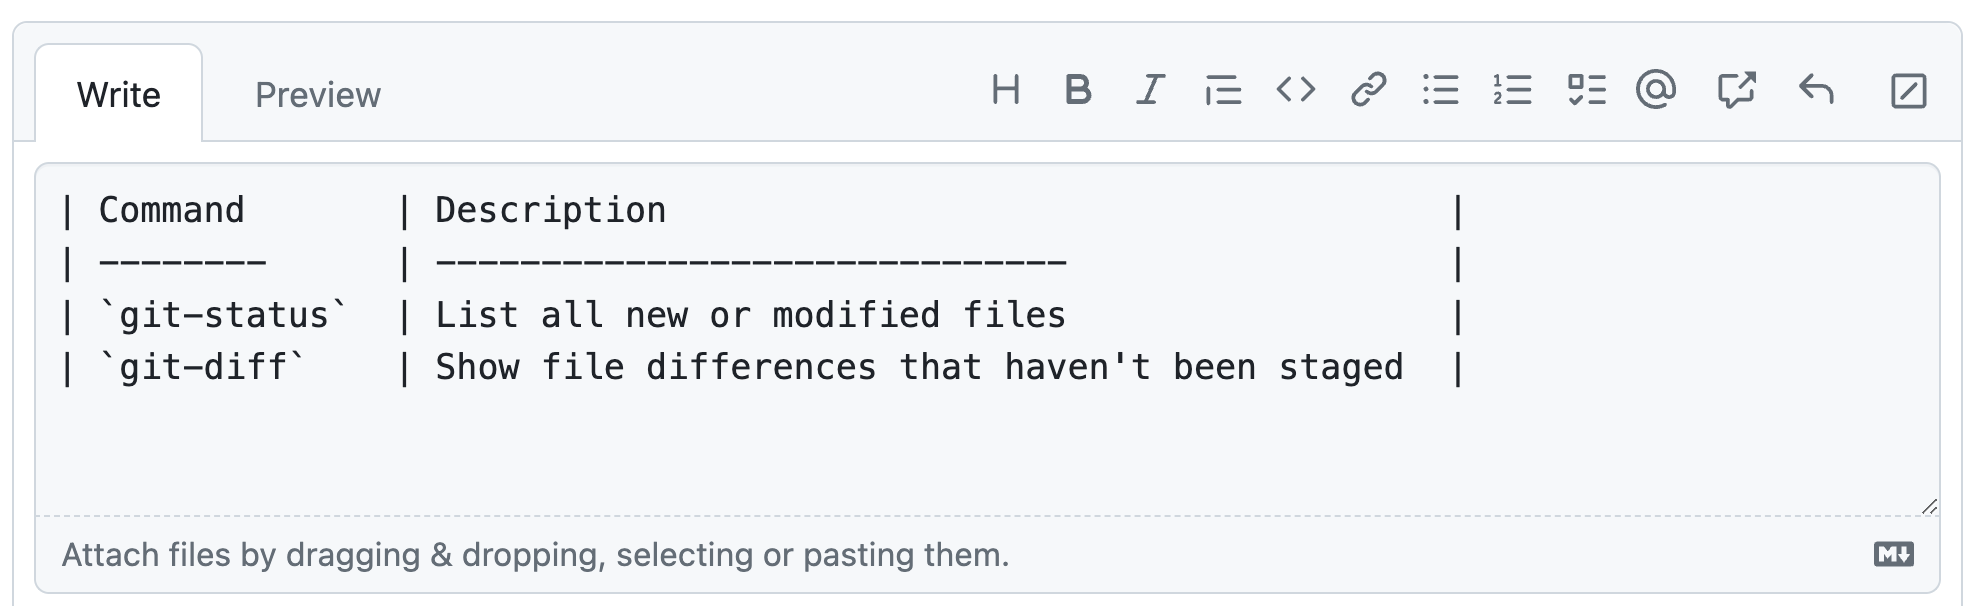 显示 GitHub 注释字段的屏幕截图，其中启用了定宽字体